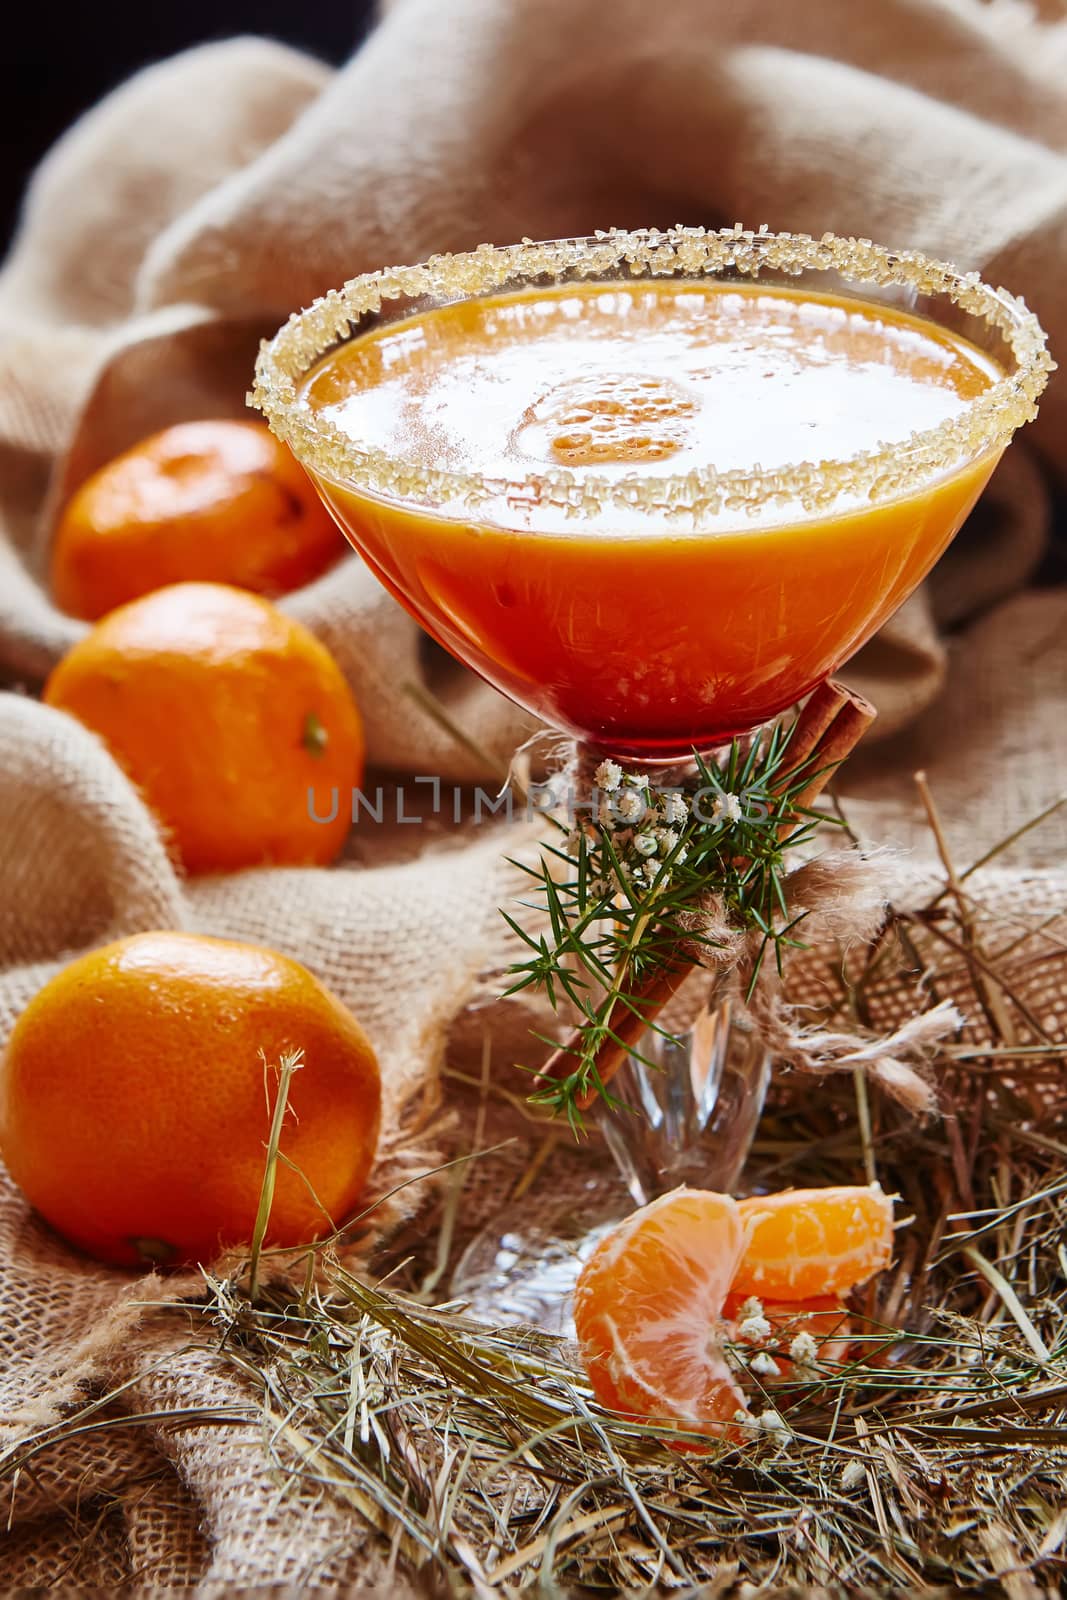 Fresh juice of ripe mandarins in glass. selective focus